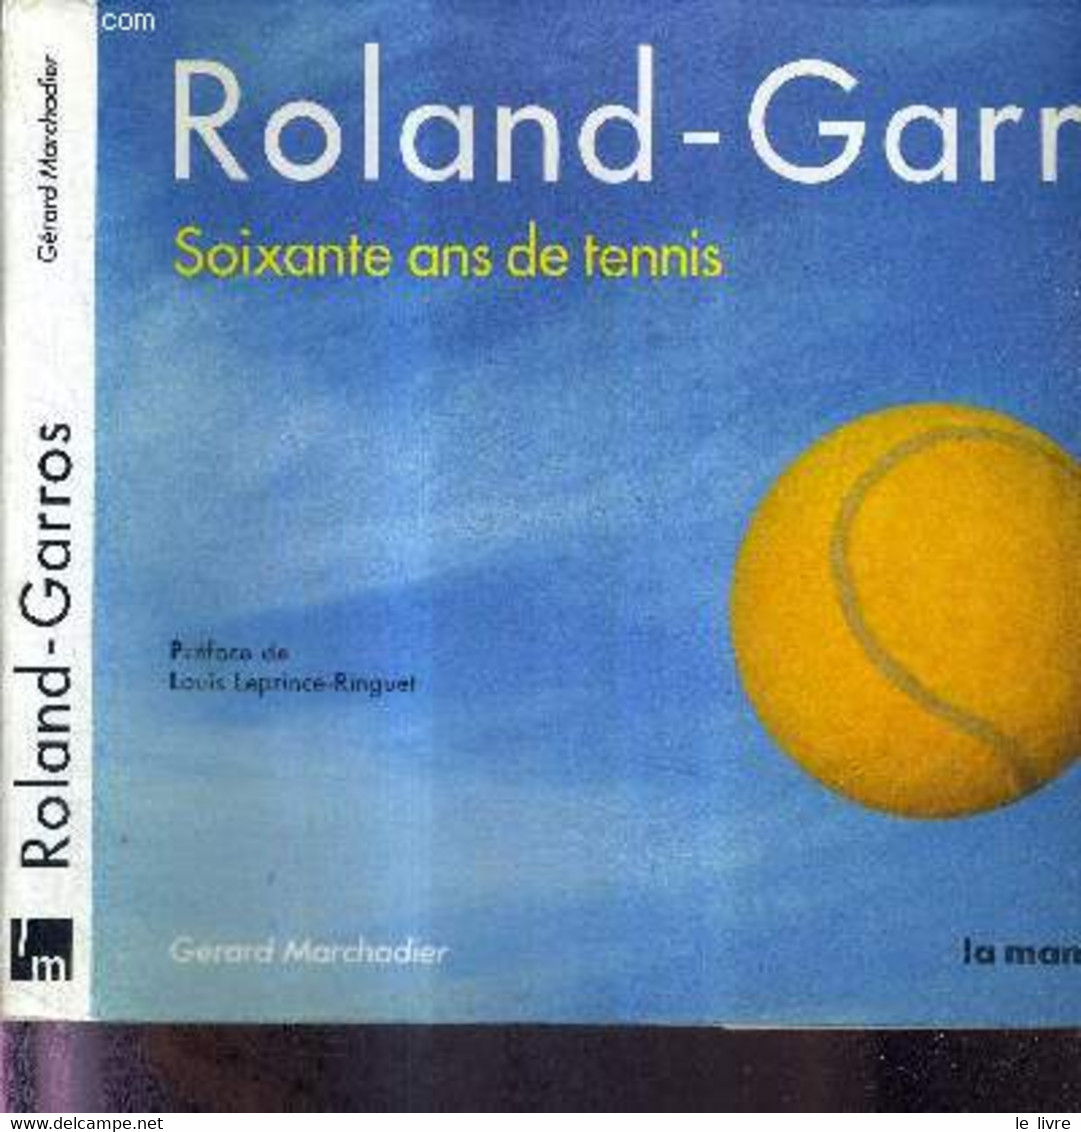 ROLAND-GARROS - SOIXANTE ANS DE TENNIS + DEDICACE DE Arantxa Sánchez Vicario - MARCHADIER GERARD - 1986 - Boeken